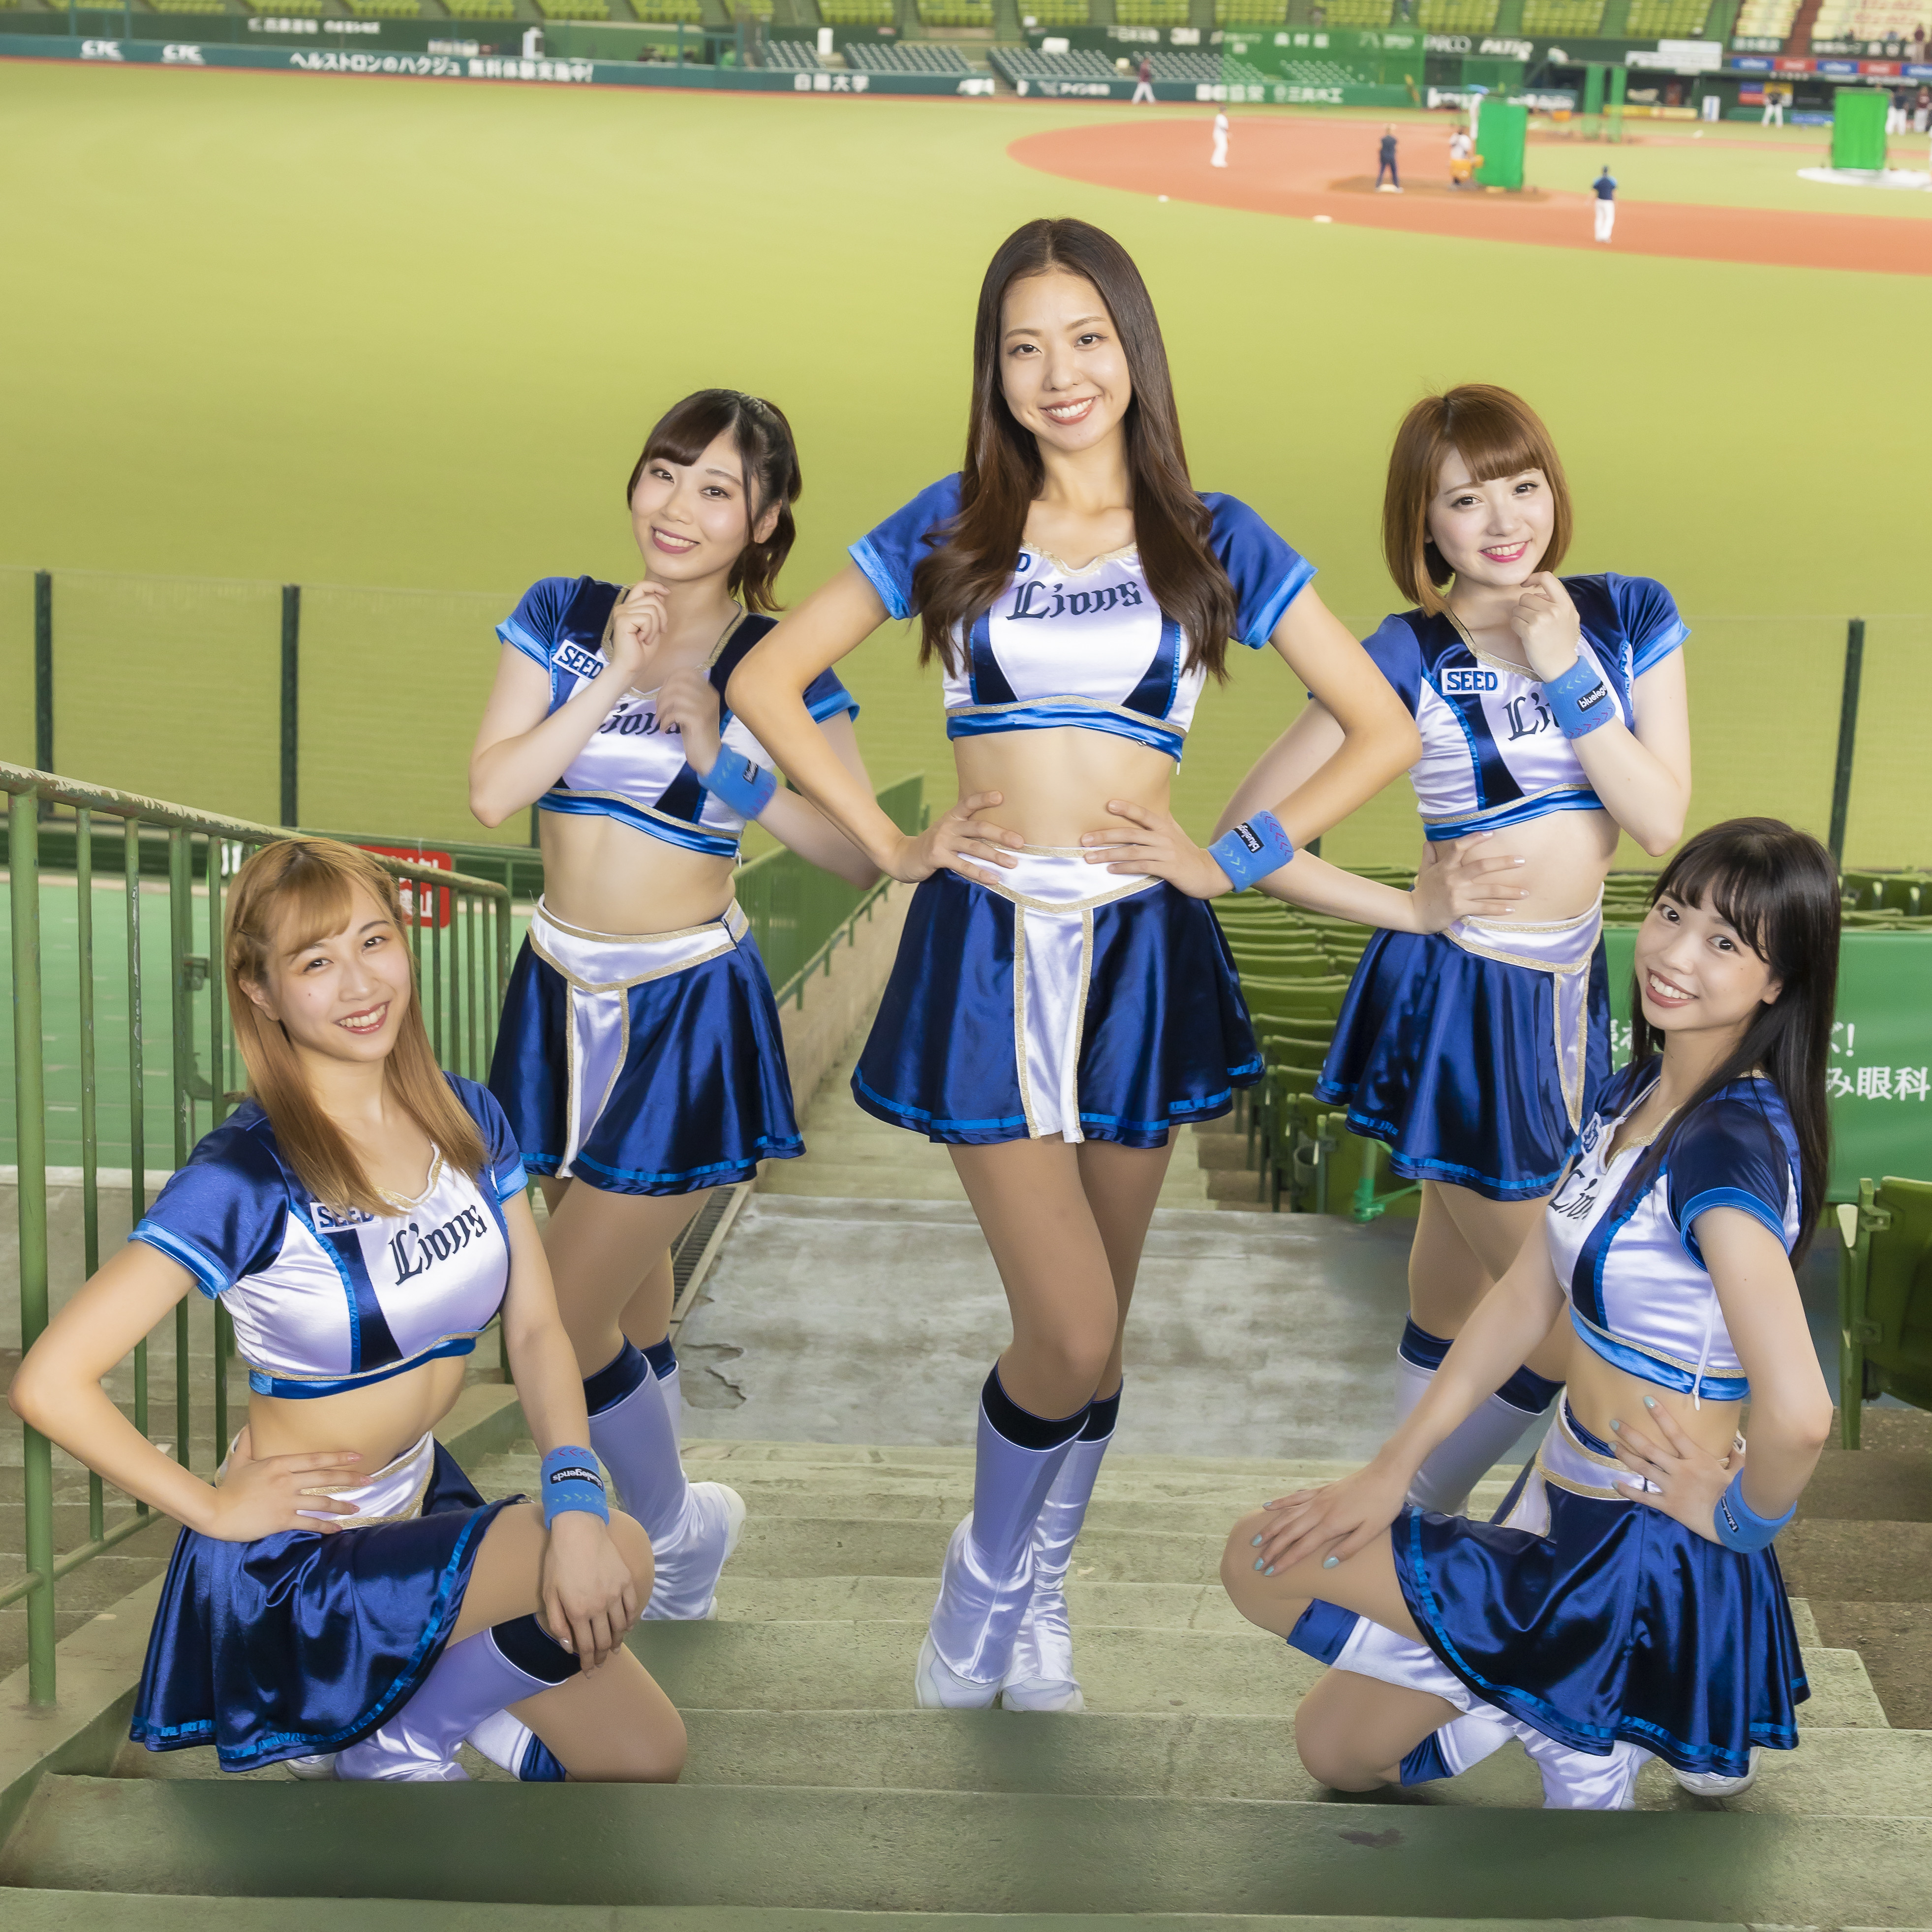 埼玉西武ランオンズ公式パフォーマー「bluelegends（ブルーレジェンズ）」メンバー。左からMisakiさん、Natsumiさん、Mihoさん、Maiさん、Amiさん